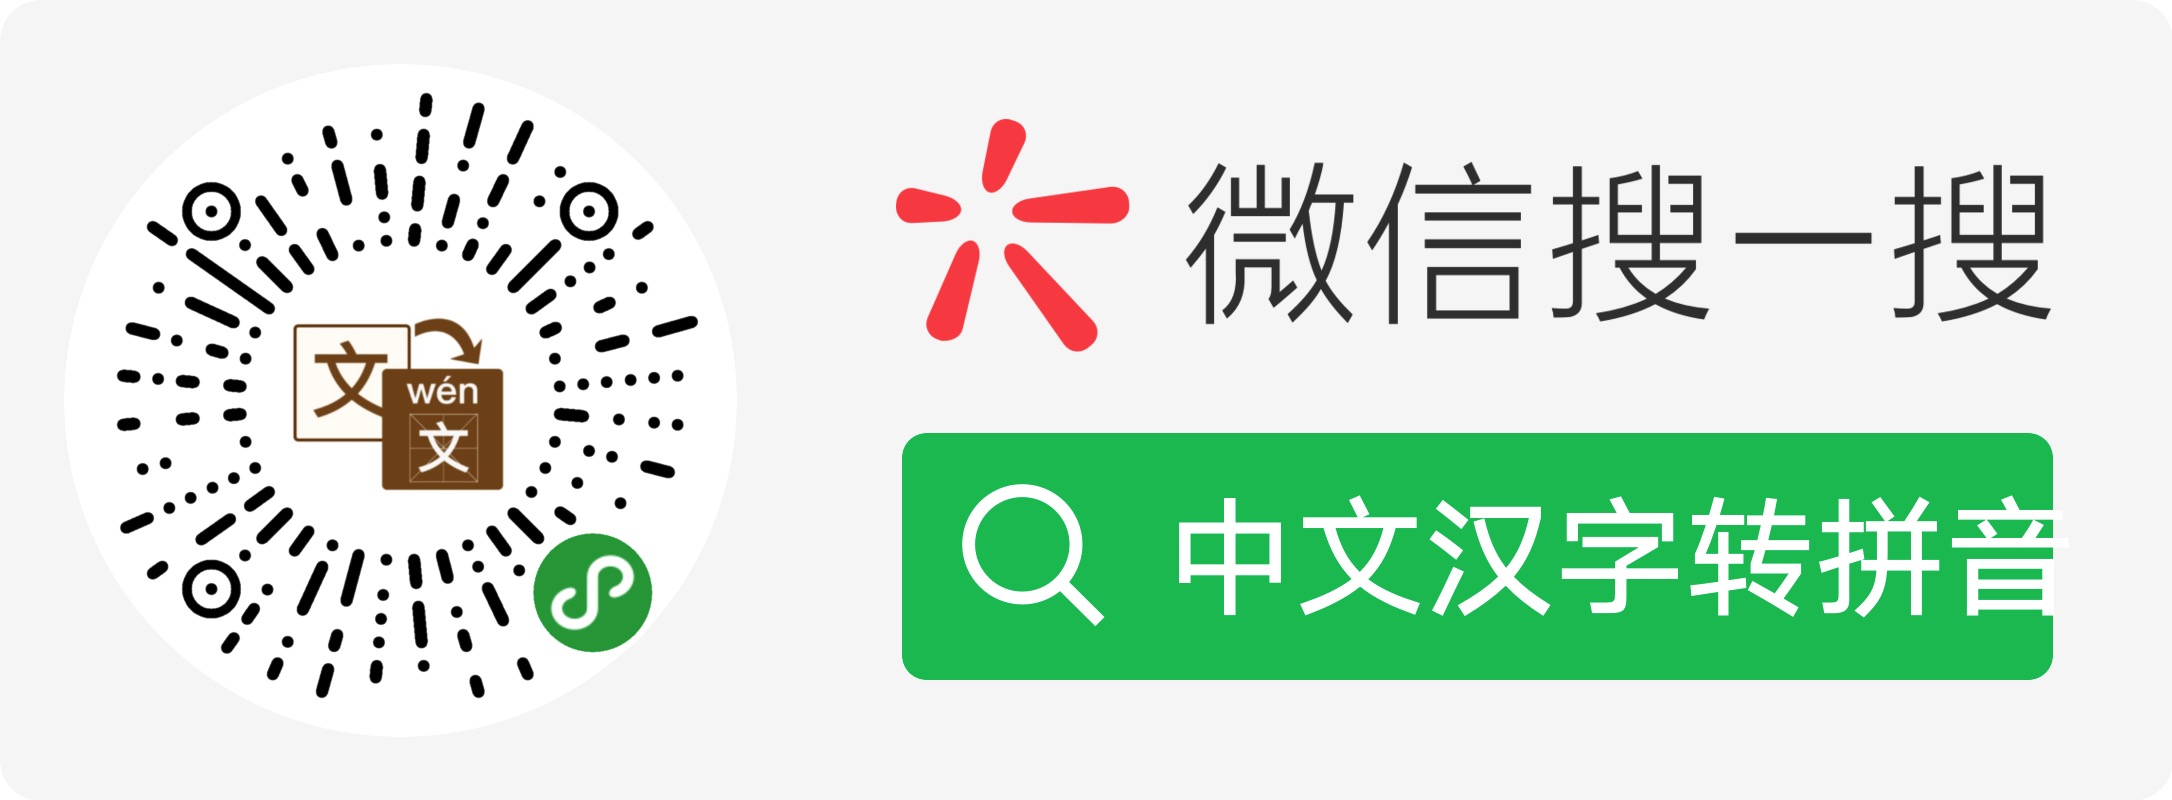 小程序中文汉字转拼音二维码